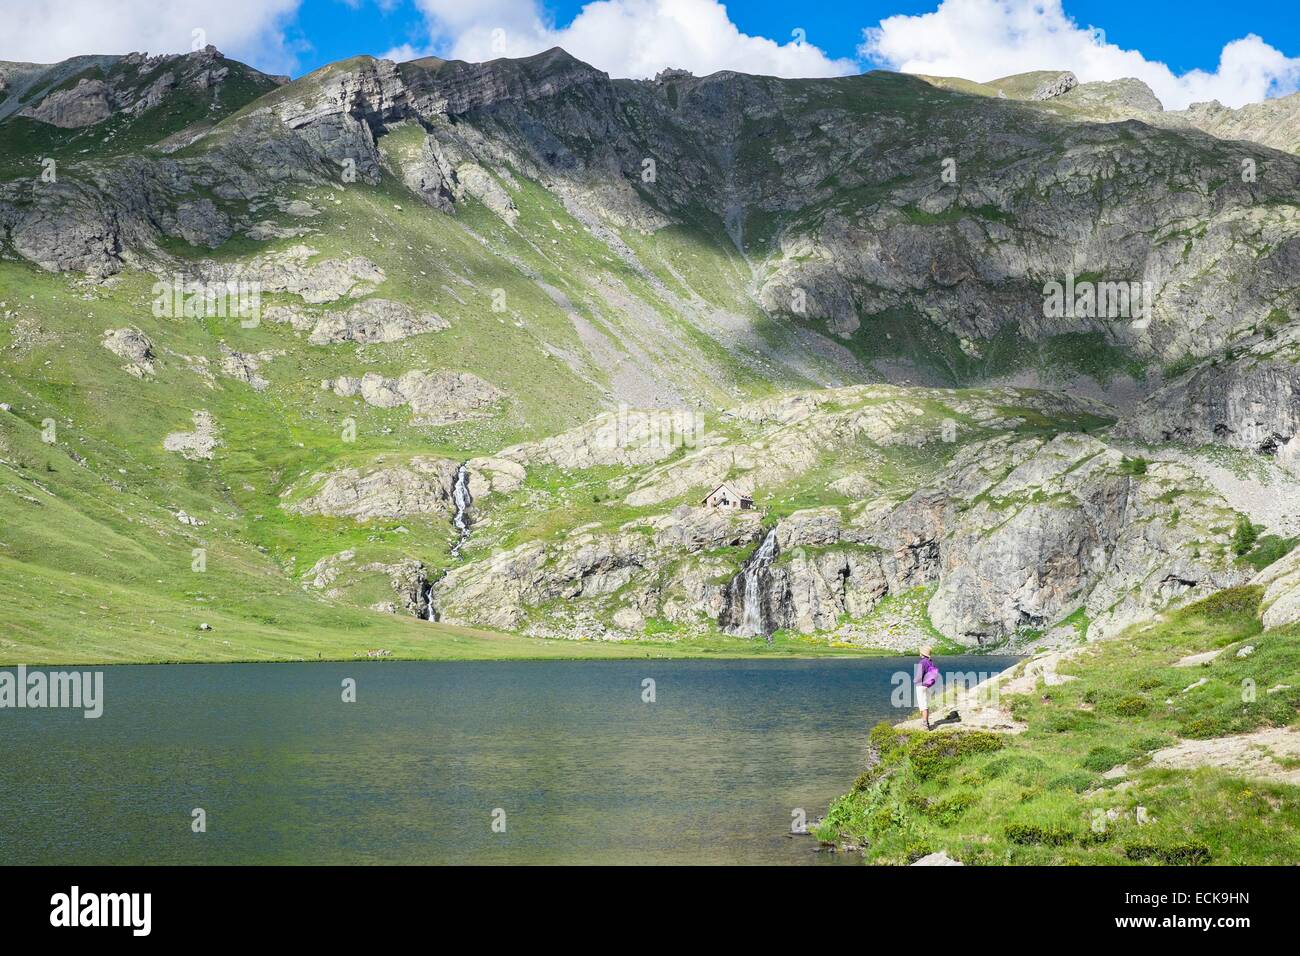 France, Alpes-Maritimes, Parc National du Mercantour, randonnées vers les lacs de Vens à partir de Saint Etienne de Tinee Vens, refuge dans l'arrière-plan (alt : 2363m) Banque D'Images